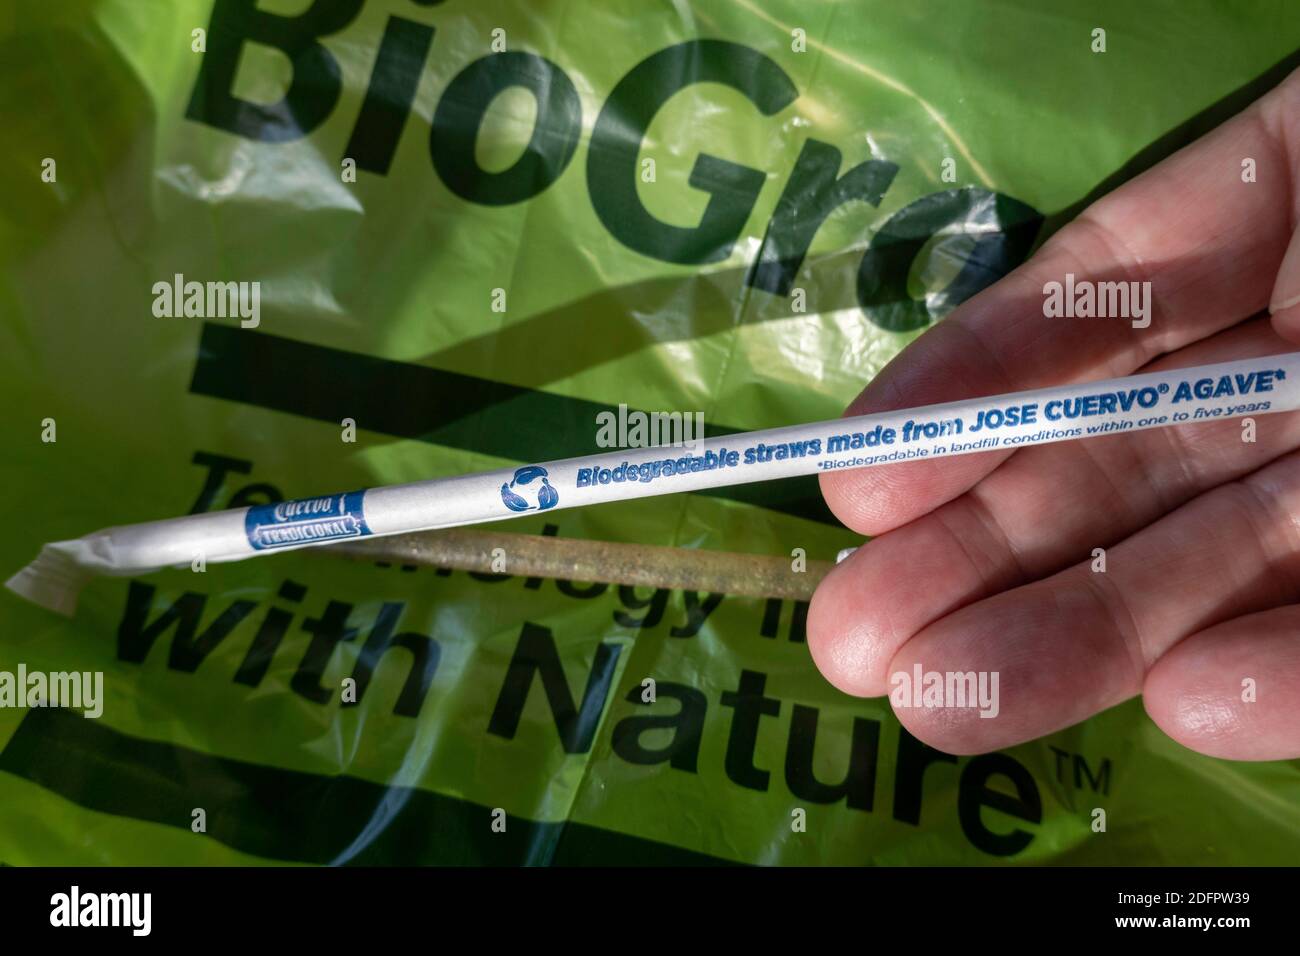 Pajuelas biodegradables hechas de Jose Cuervo Agave con una bolsa de basura BioGrade, USA Foto de stock